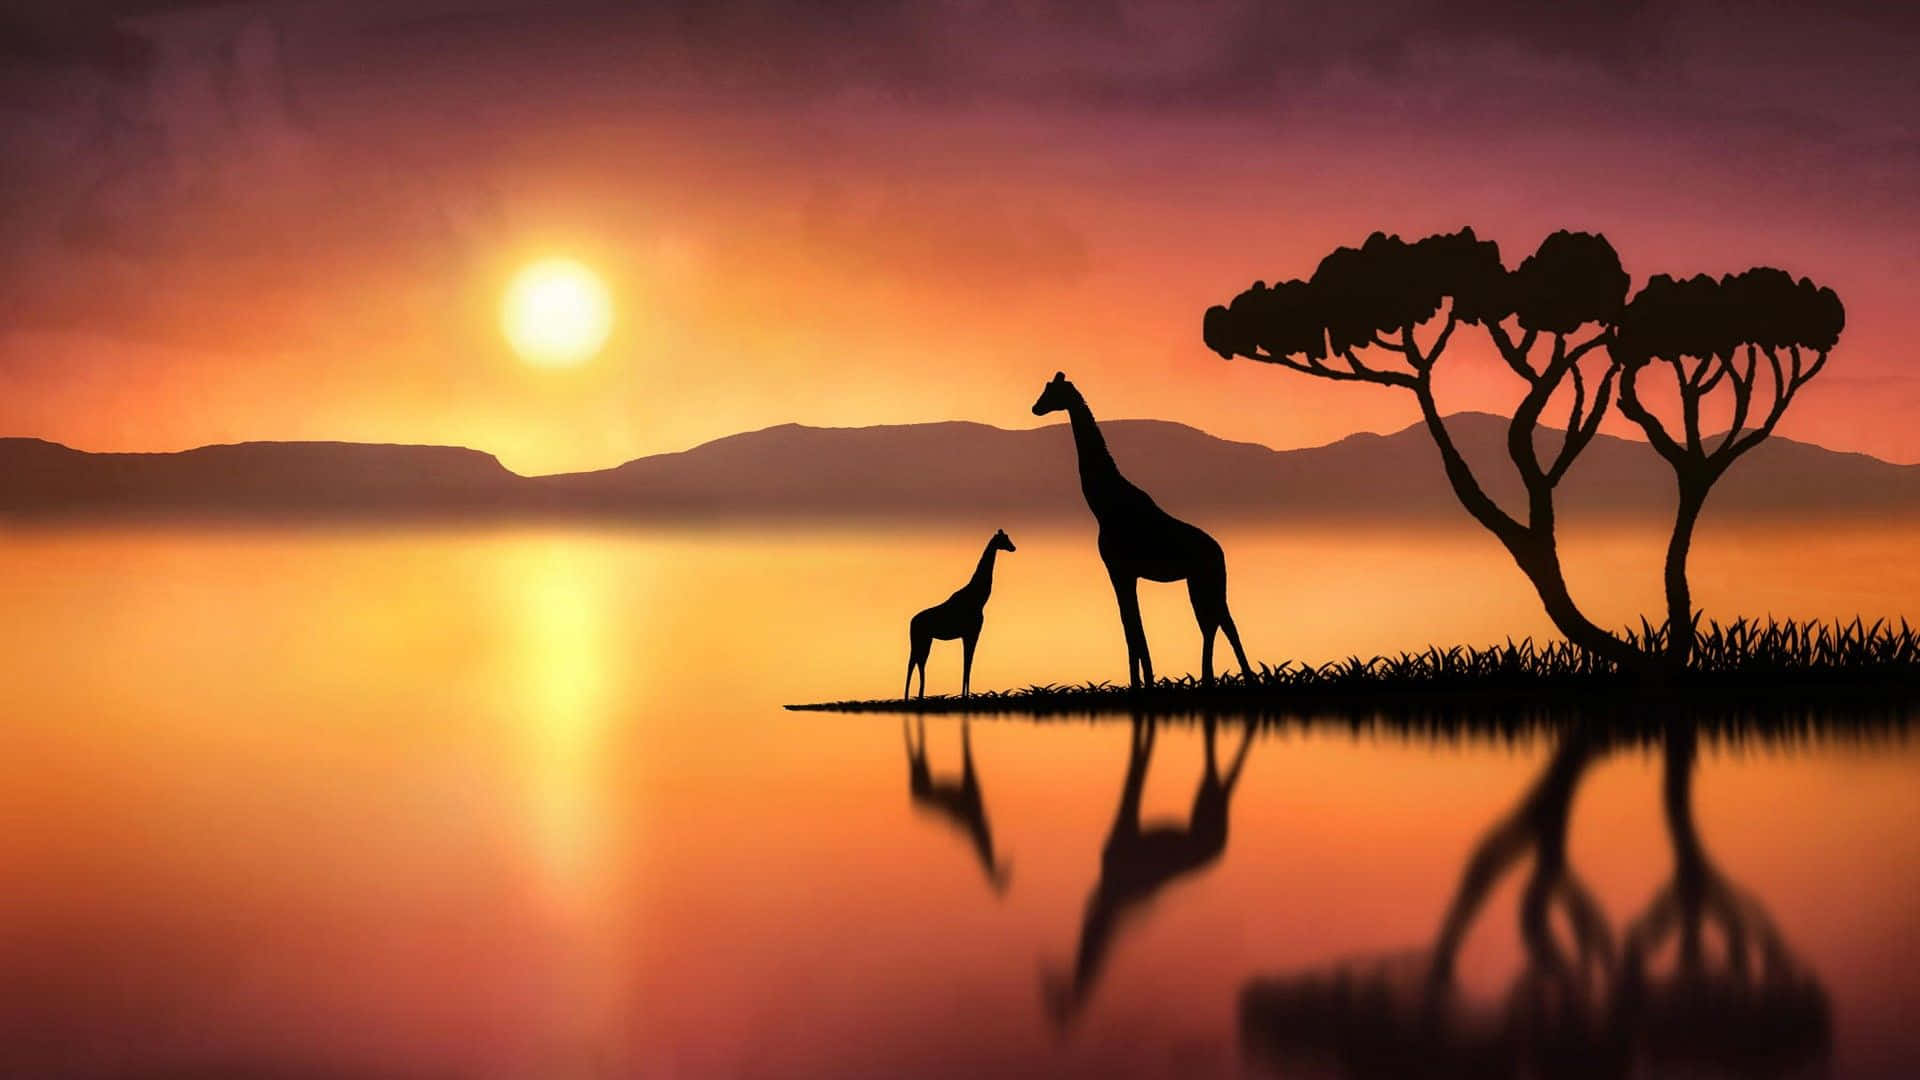 Einmajestätischer Ausblick Auf Eine Giraffe In Ihrem Majestätischen Lebensraum